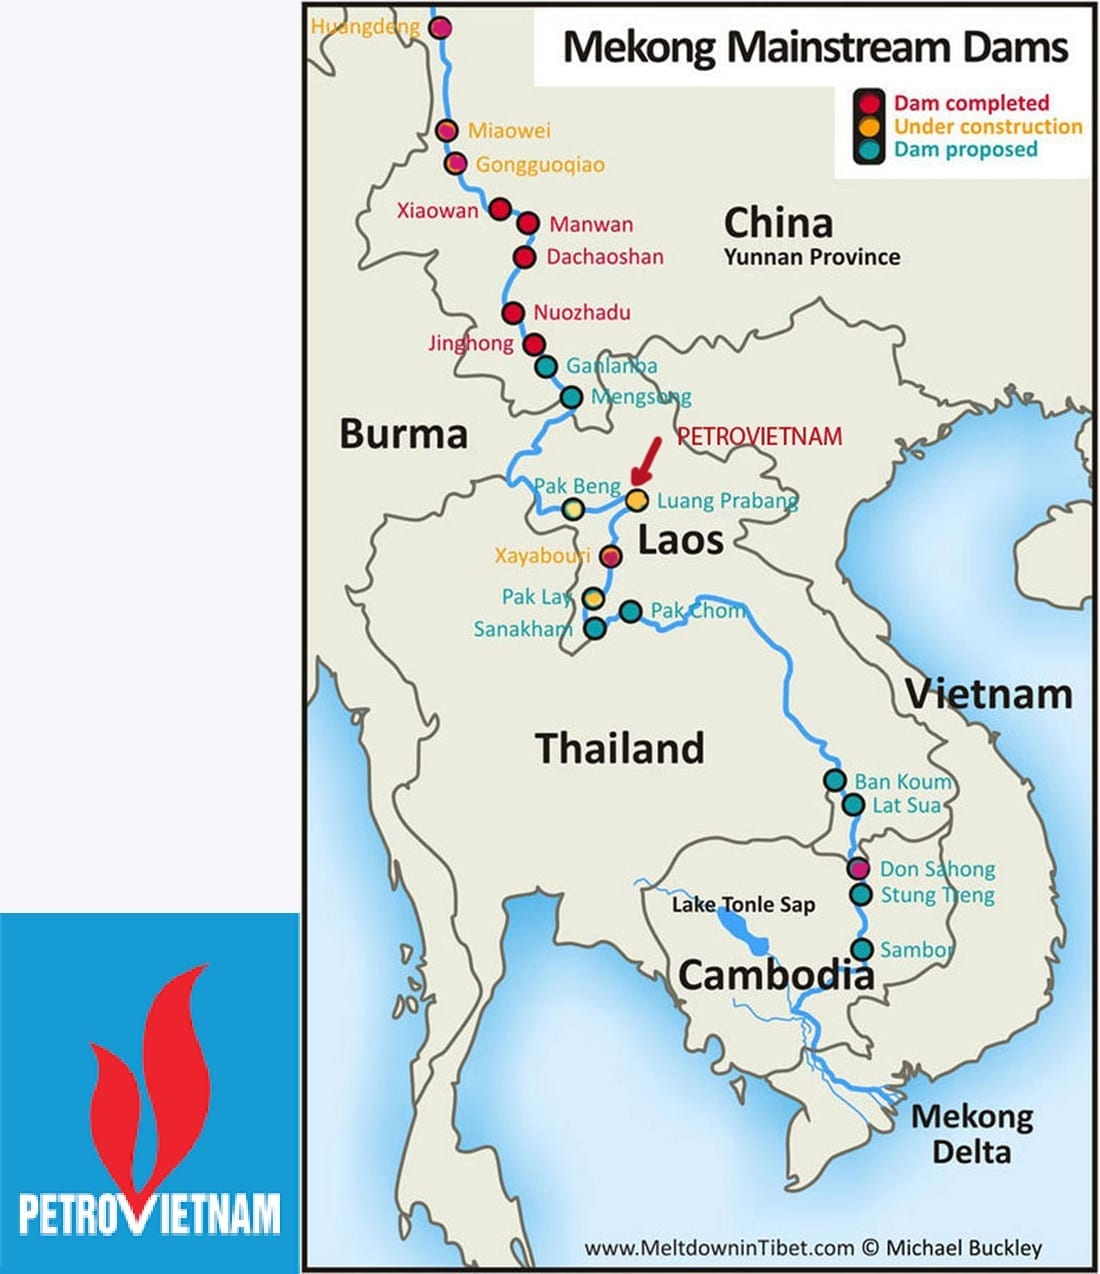 Lào ‘lấn tới’ với thủy điện Luang Prabang và ứng phó cho Việt Nam - 2